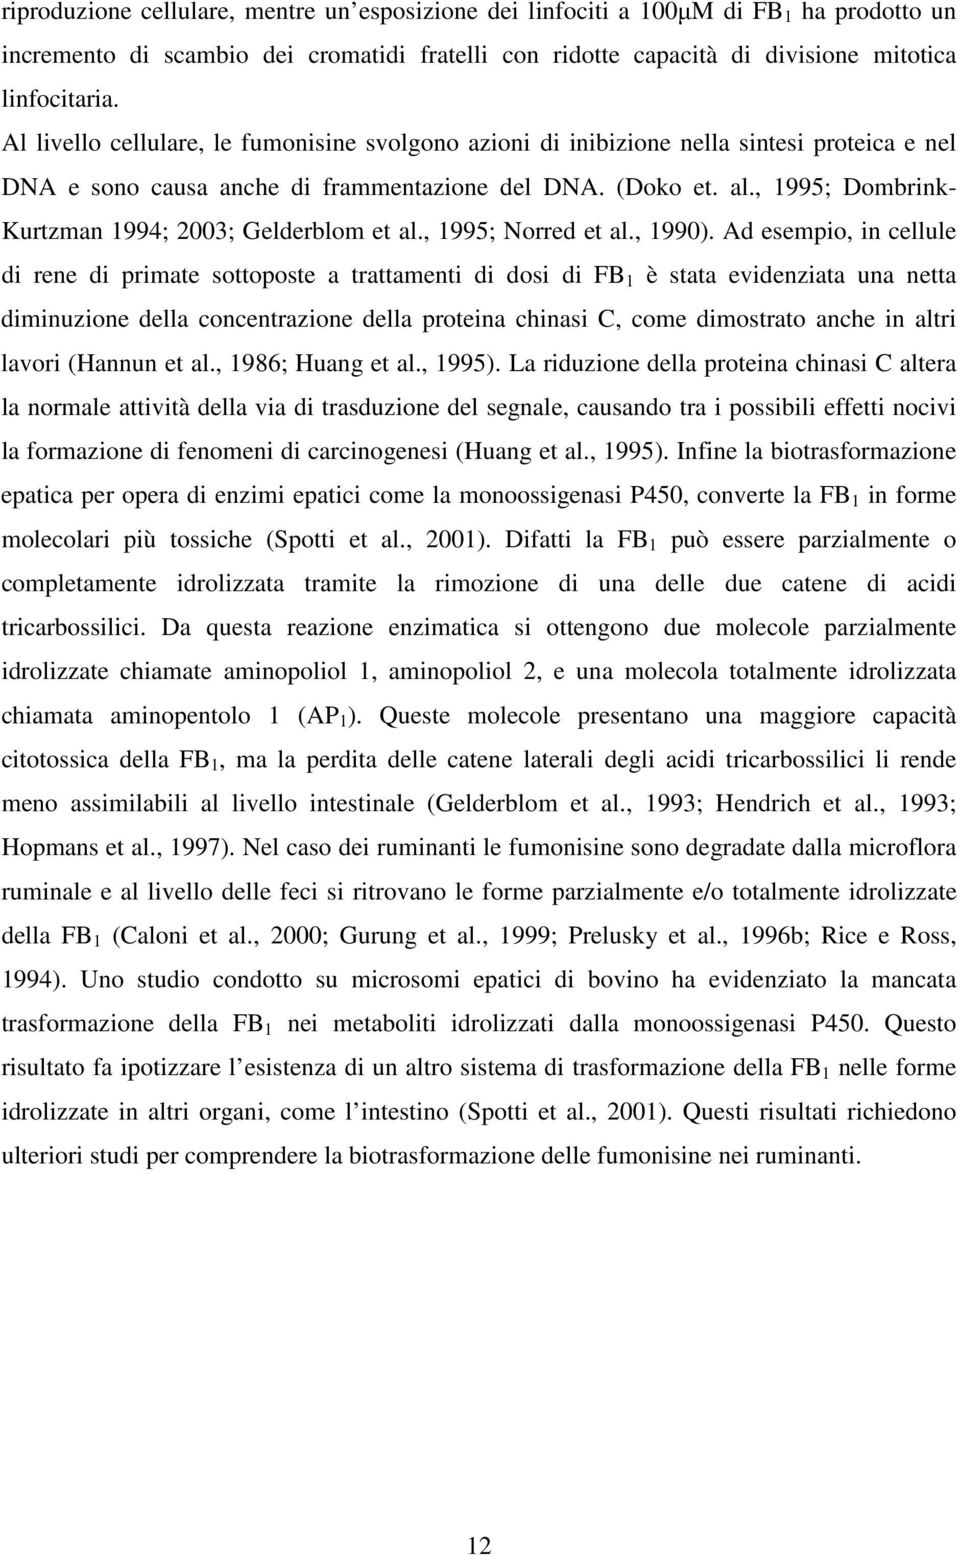 , 1995; Dombrink- Kurtzman 1994; 2003; Gelderblom et al., 1995; Norred et al., 1990).